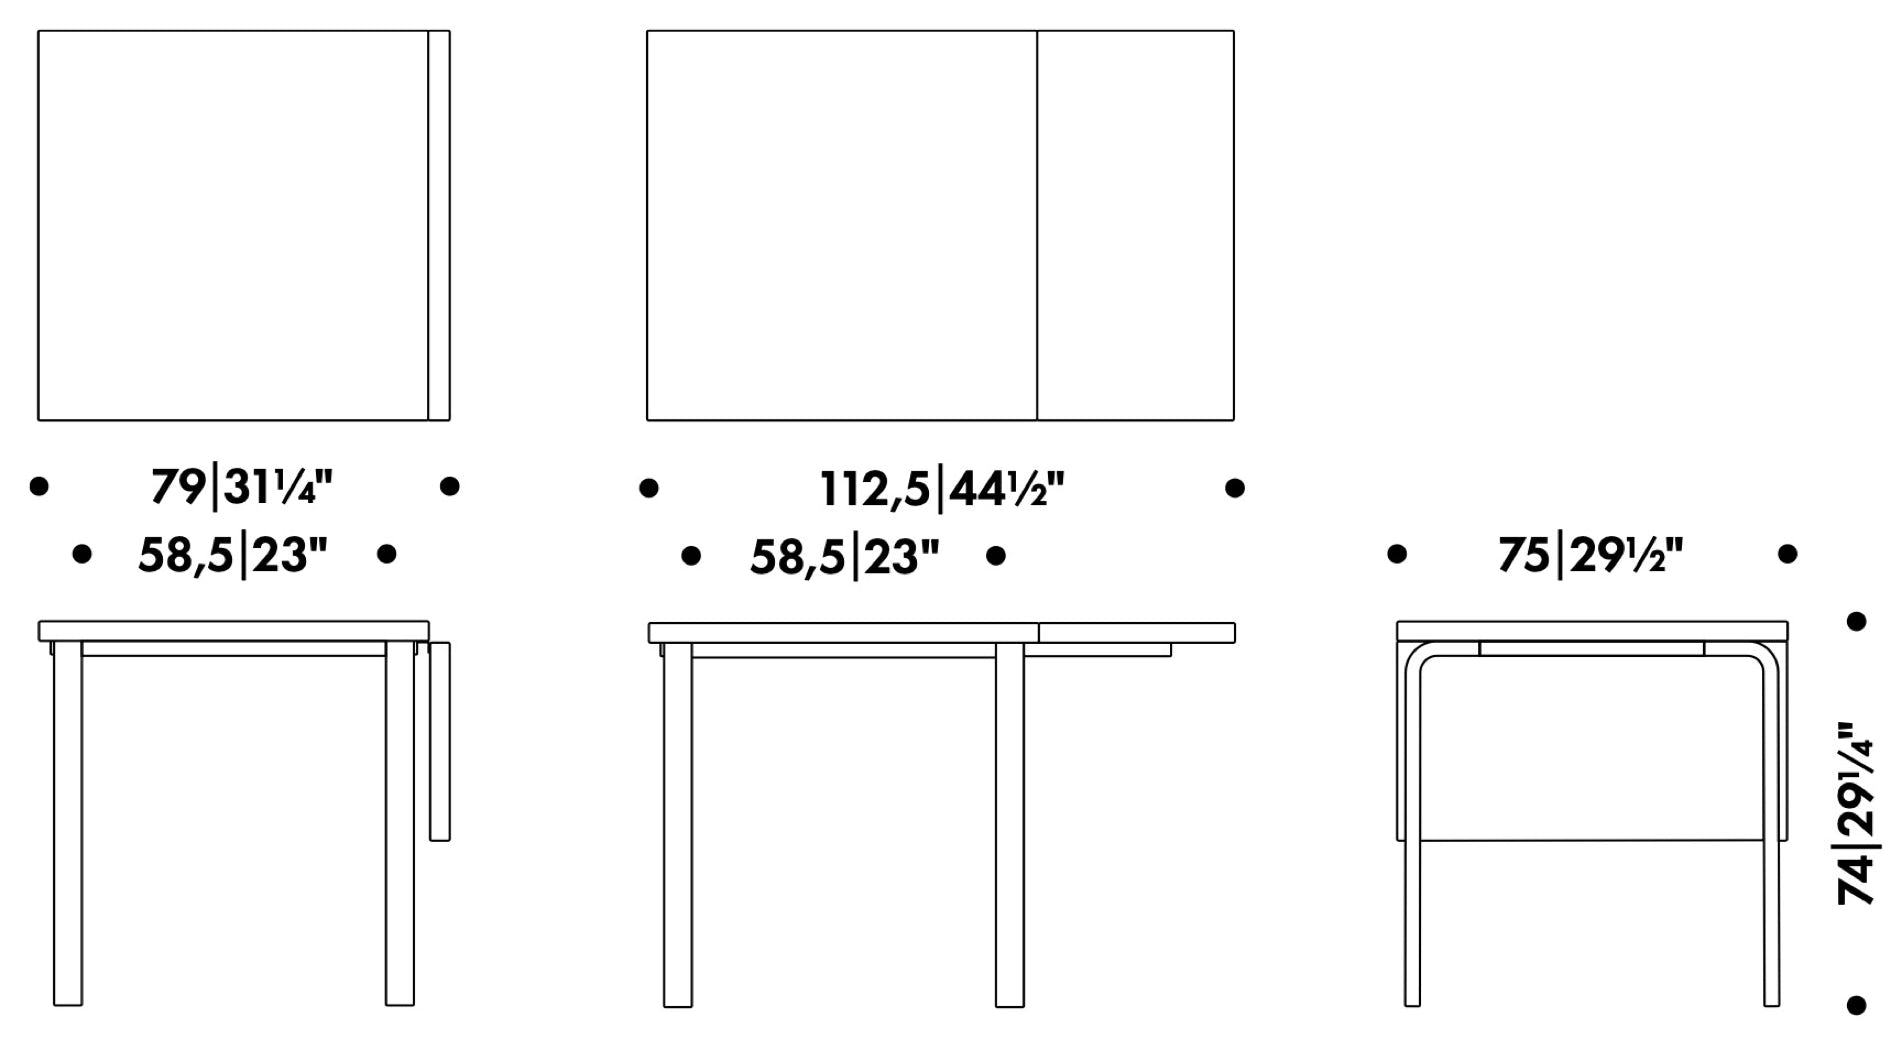 Table pliante DL81C Alvar Aalto, 1933